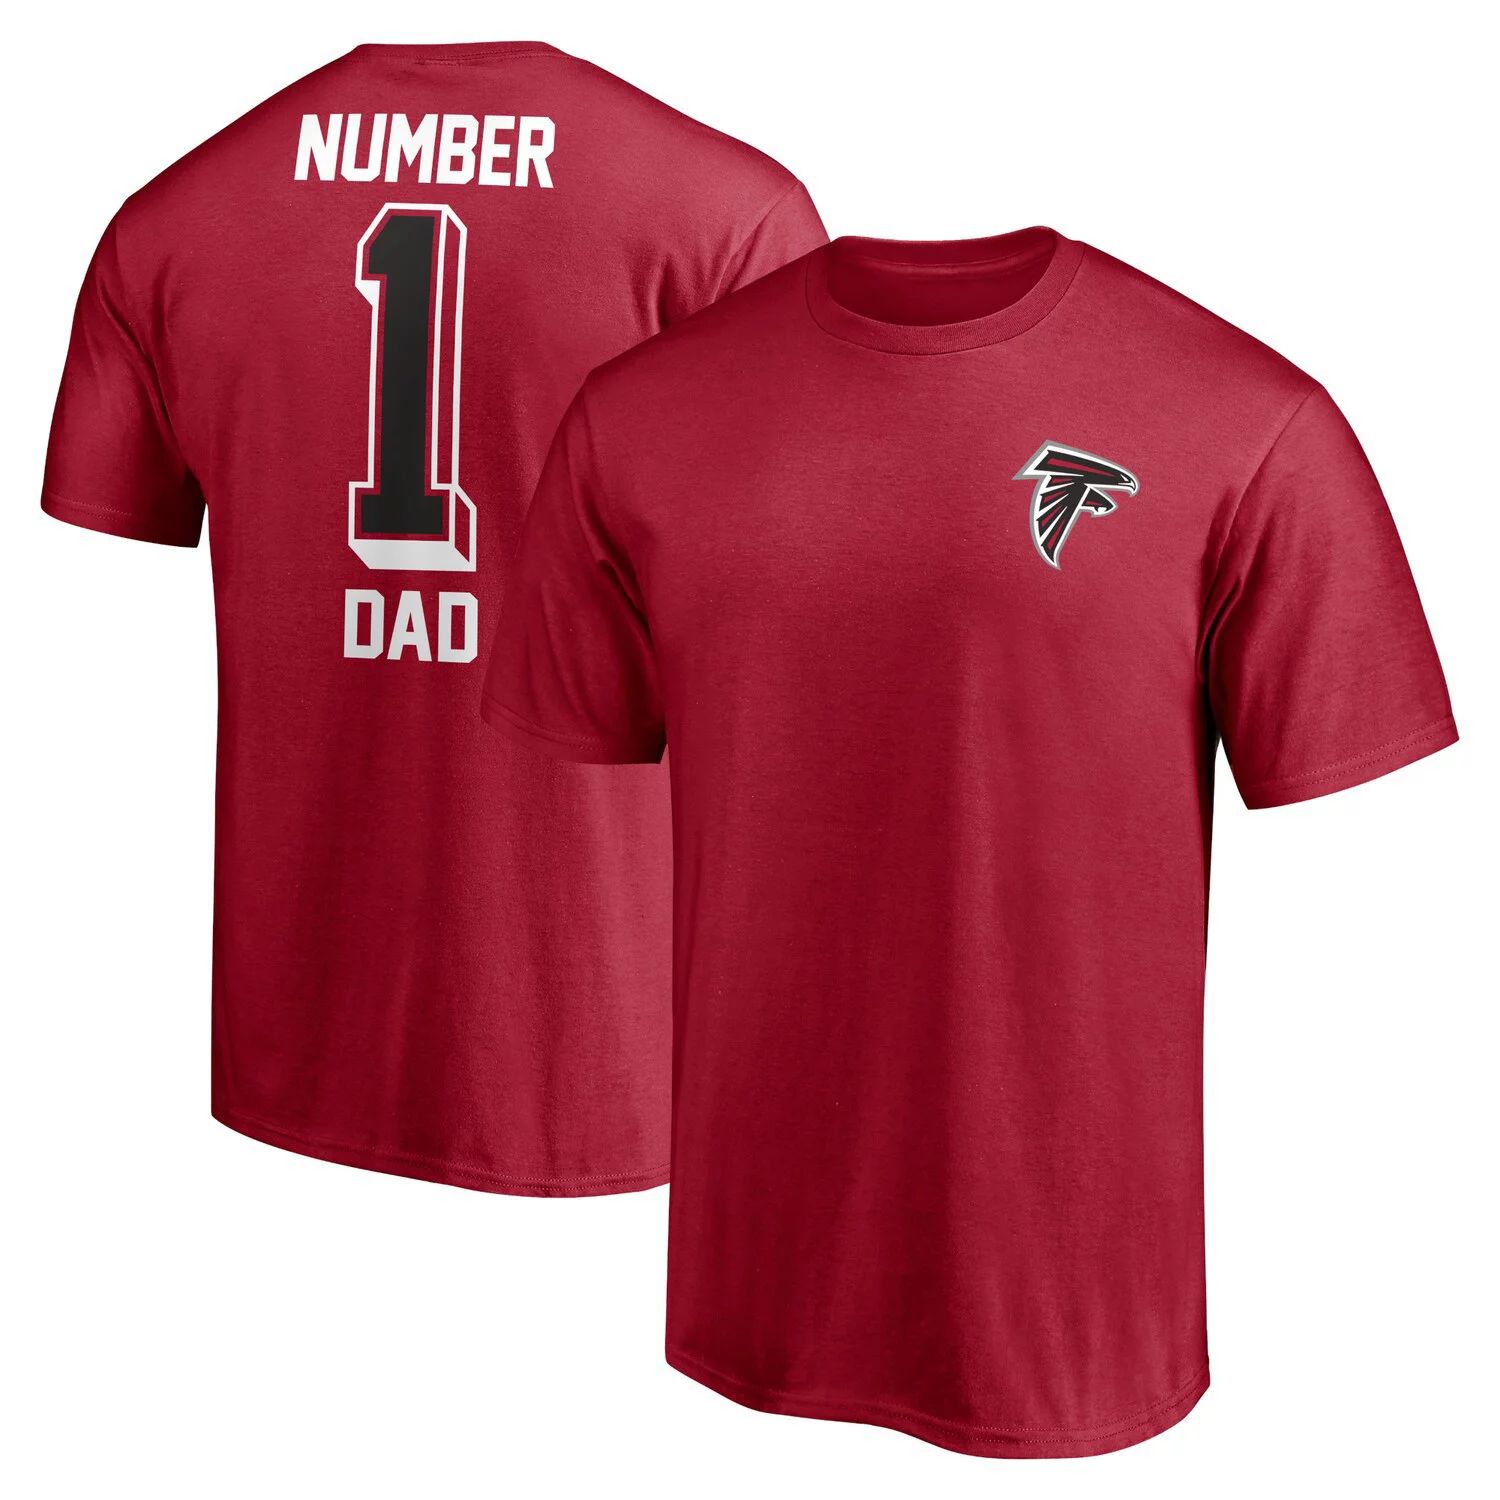 Мужская красная футболка Fanatics Atlanta Falcons #1 Dad